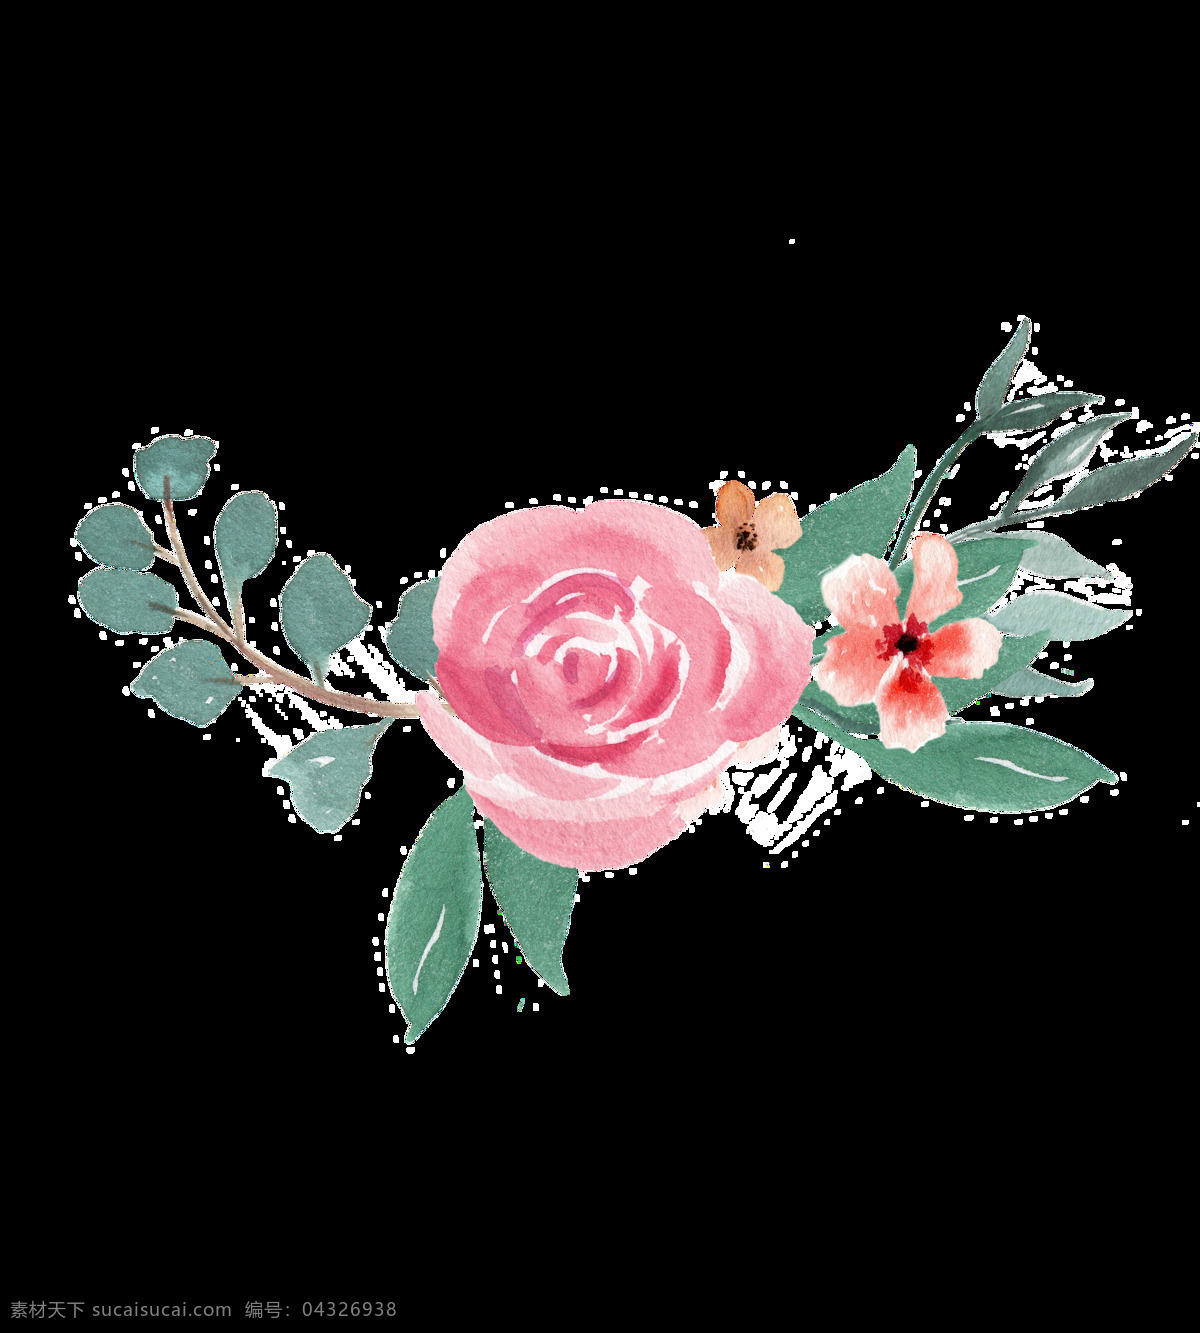 婚礼 贺卡 装饰 花卉 透明 设计素材 背景素材